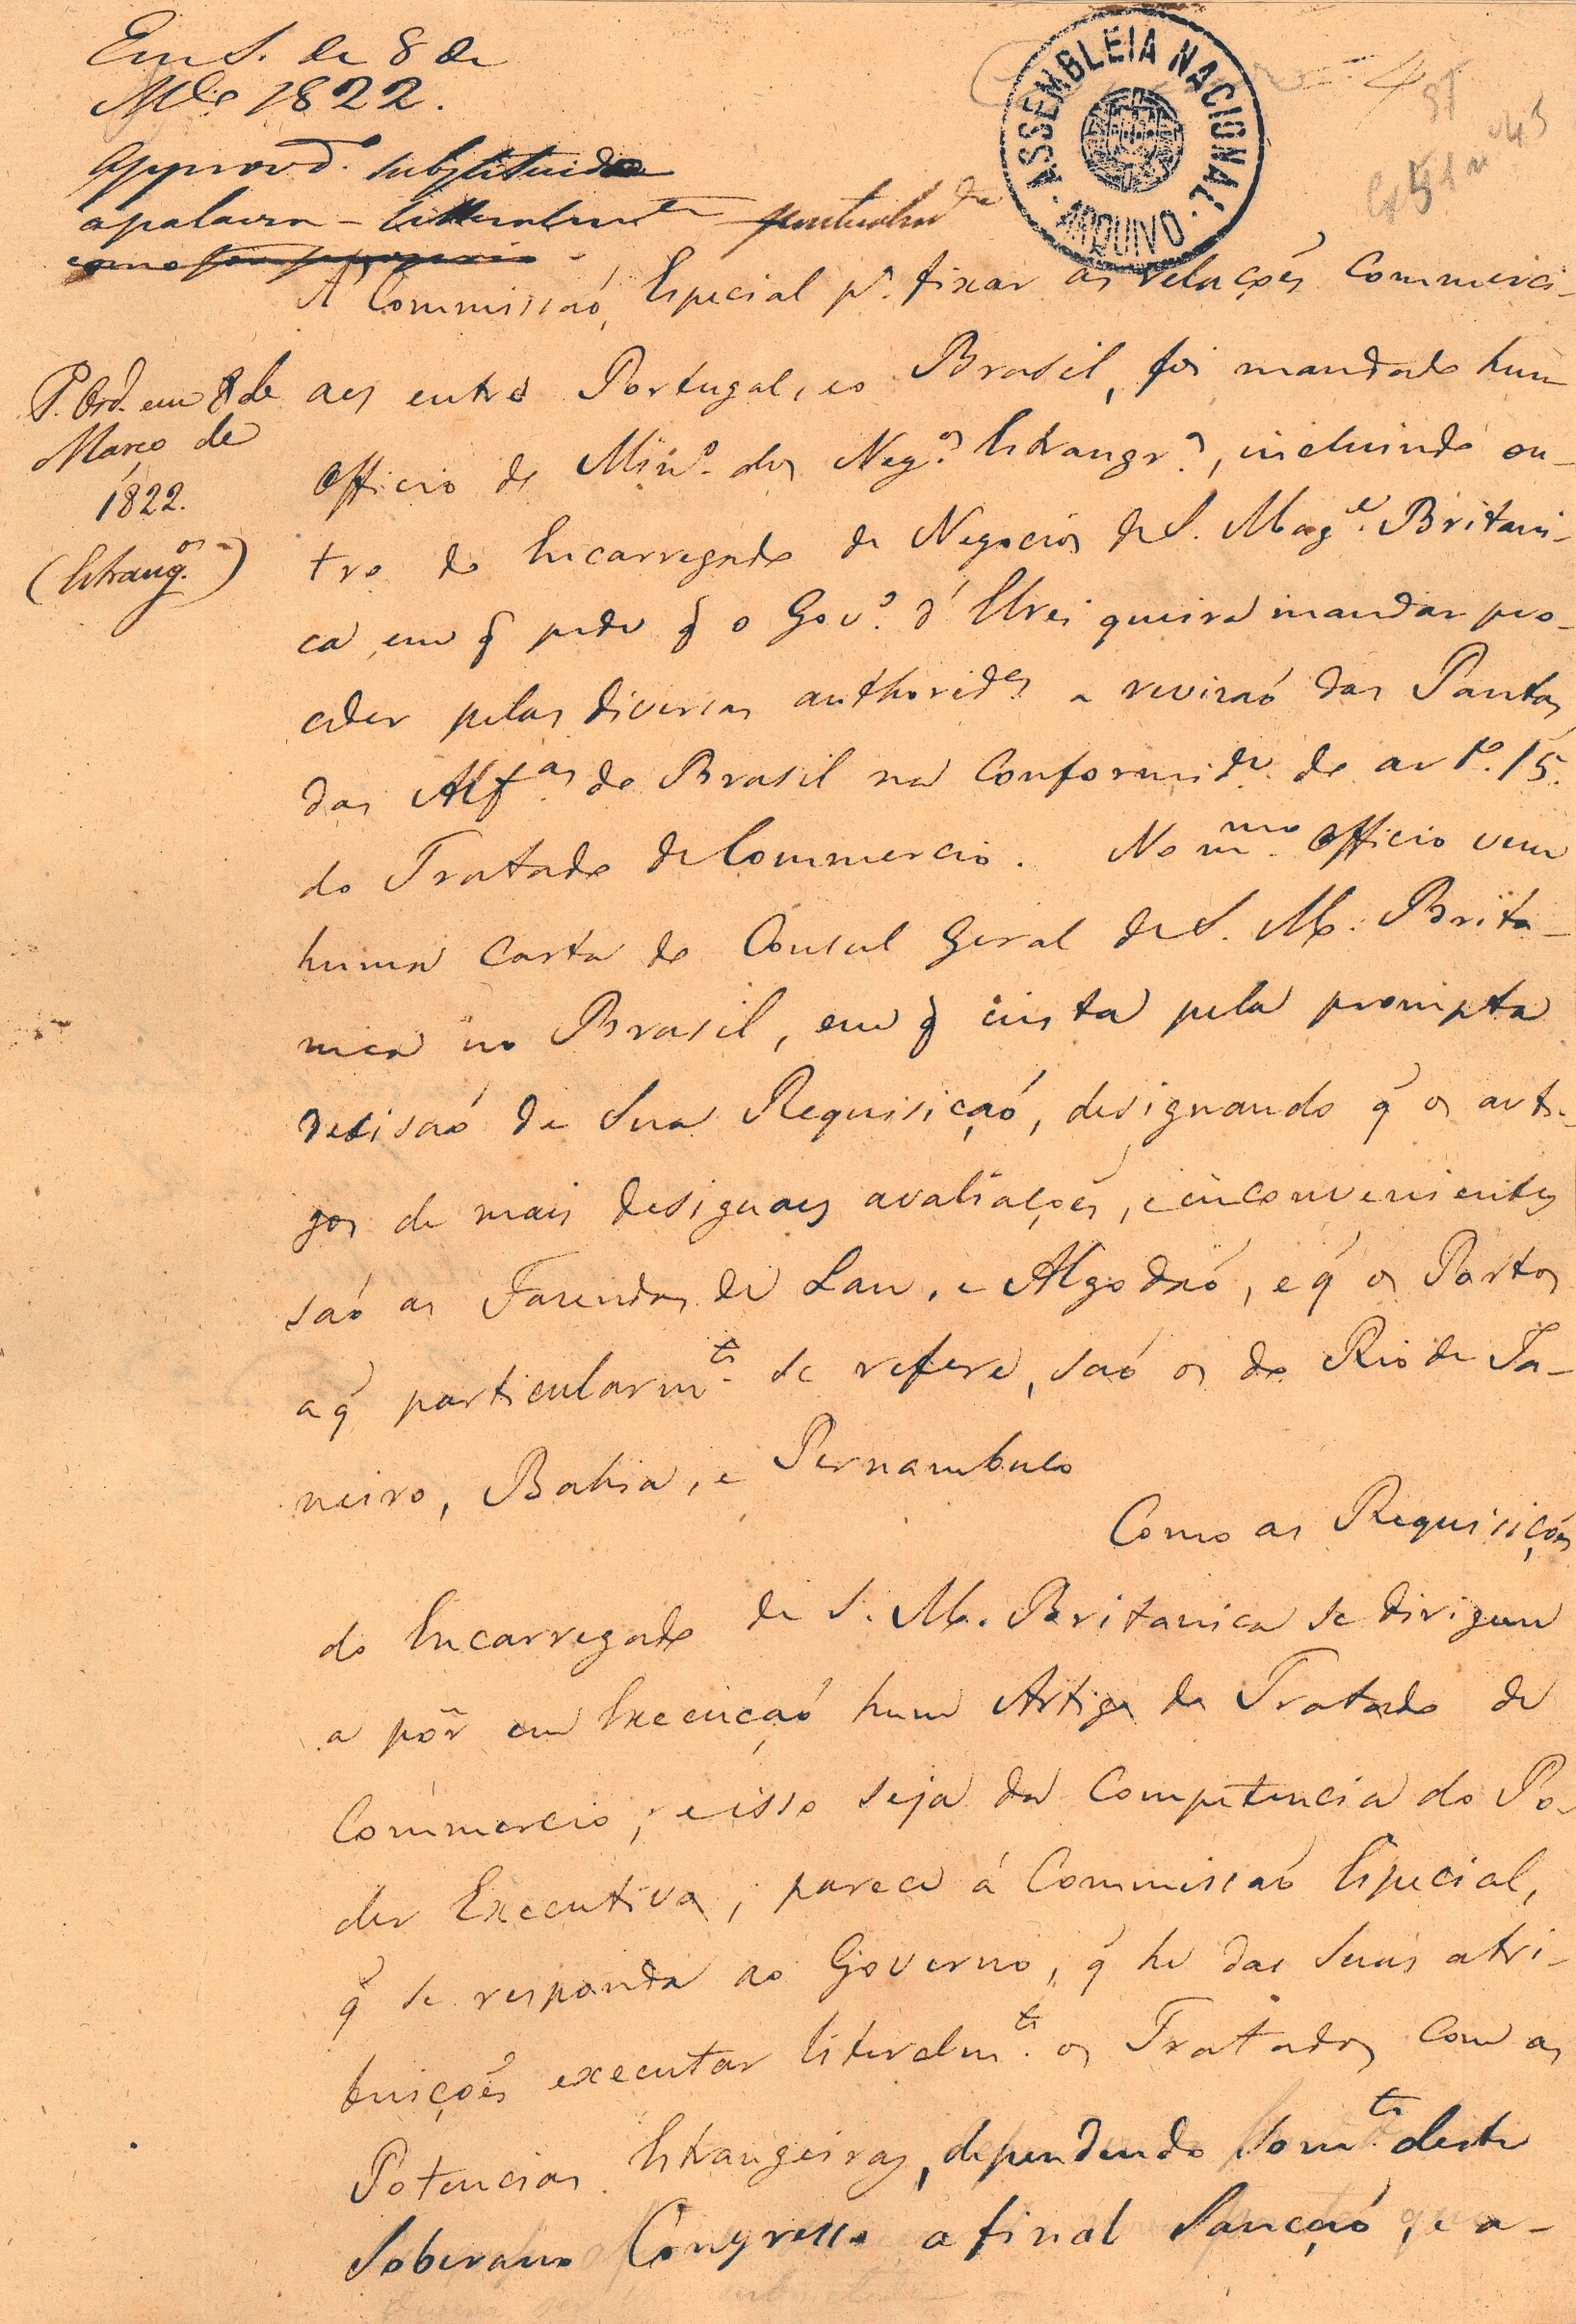  Parecer da Comissão, de 7 de março de 1822, determinando a competência do governo para a execução da revisão das pautas da alfândega do Brasil e a competência do Congresso na sua aprovação final. Cota AHP: Secção I/II, cx. 83, mç. 51, doc. 45.